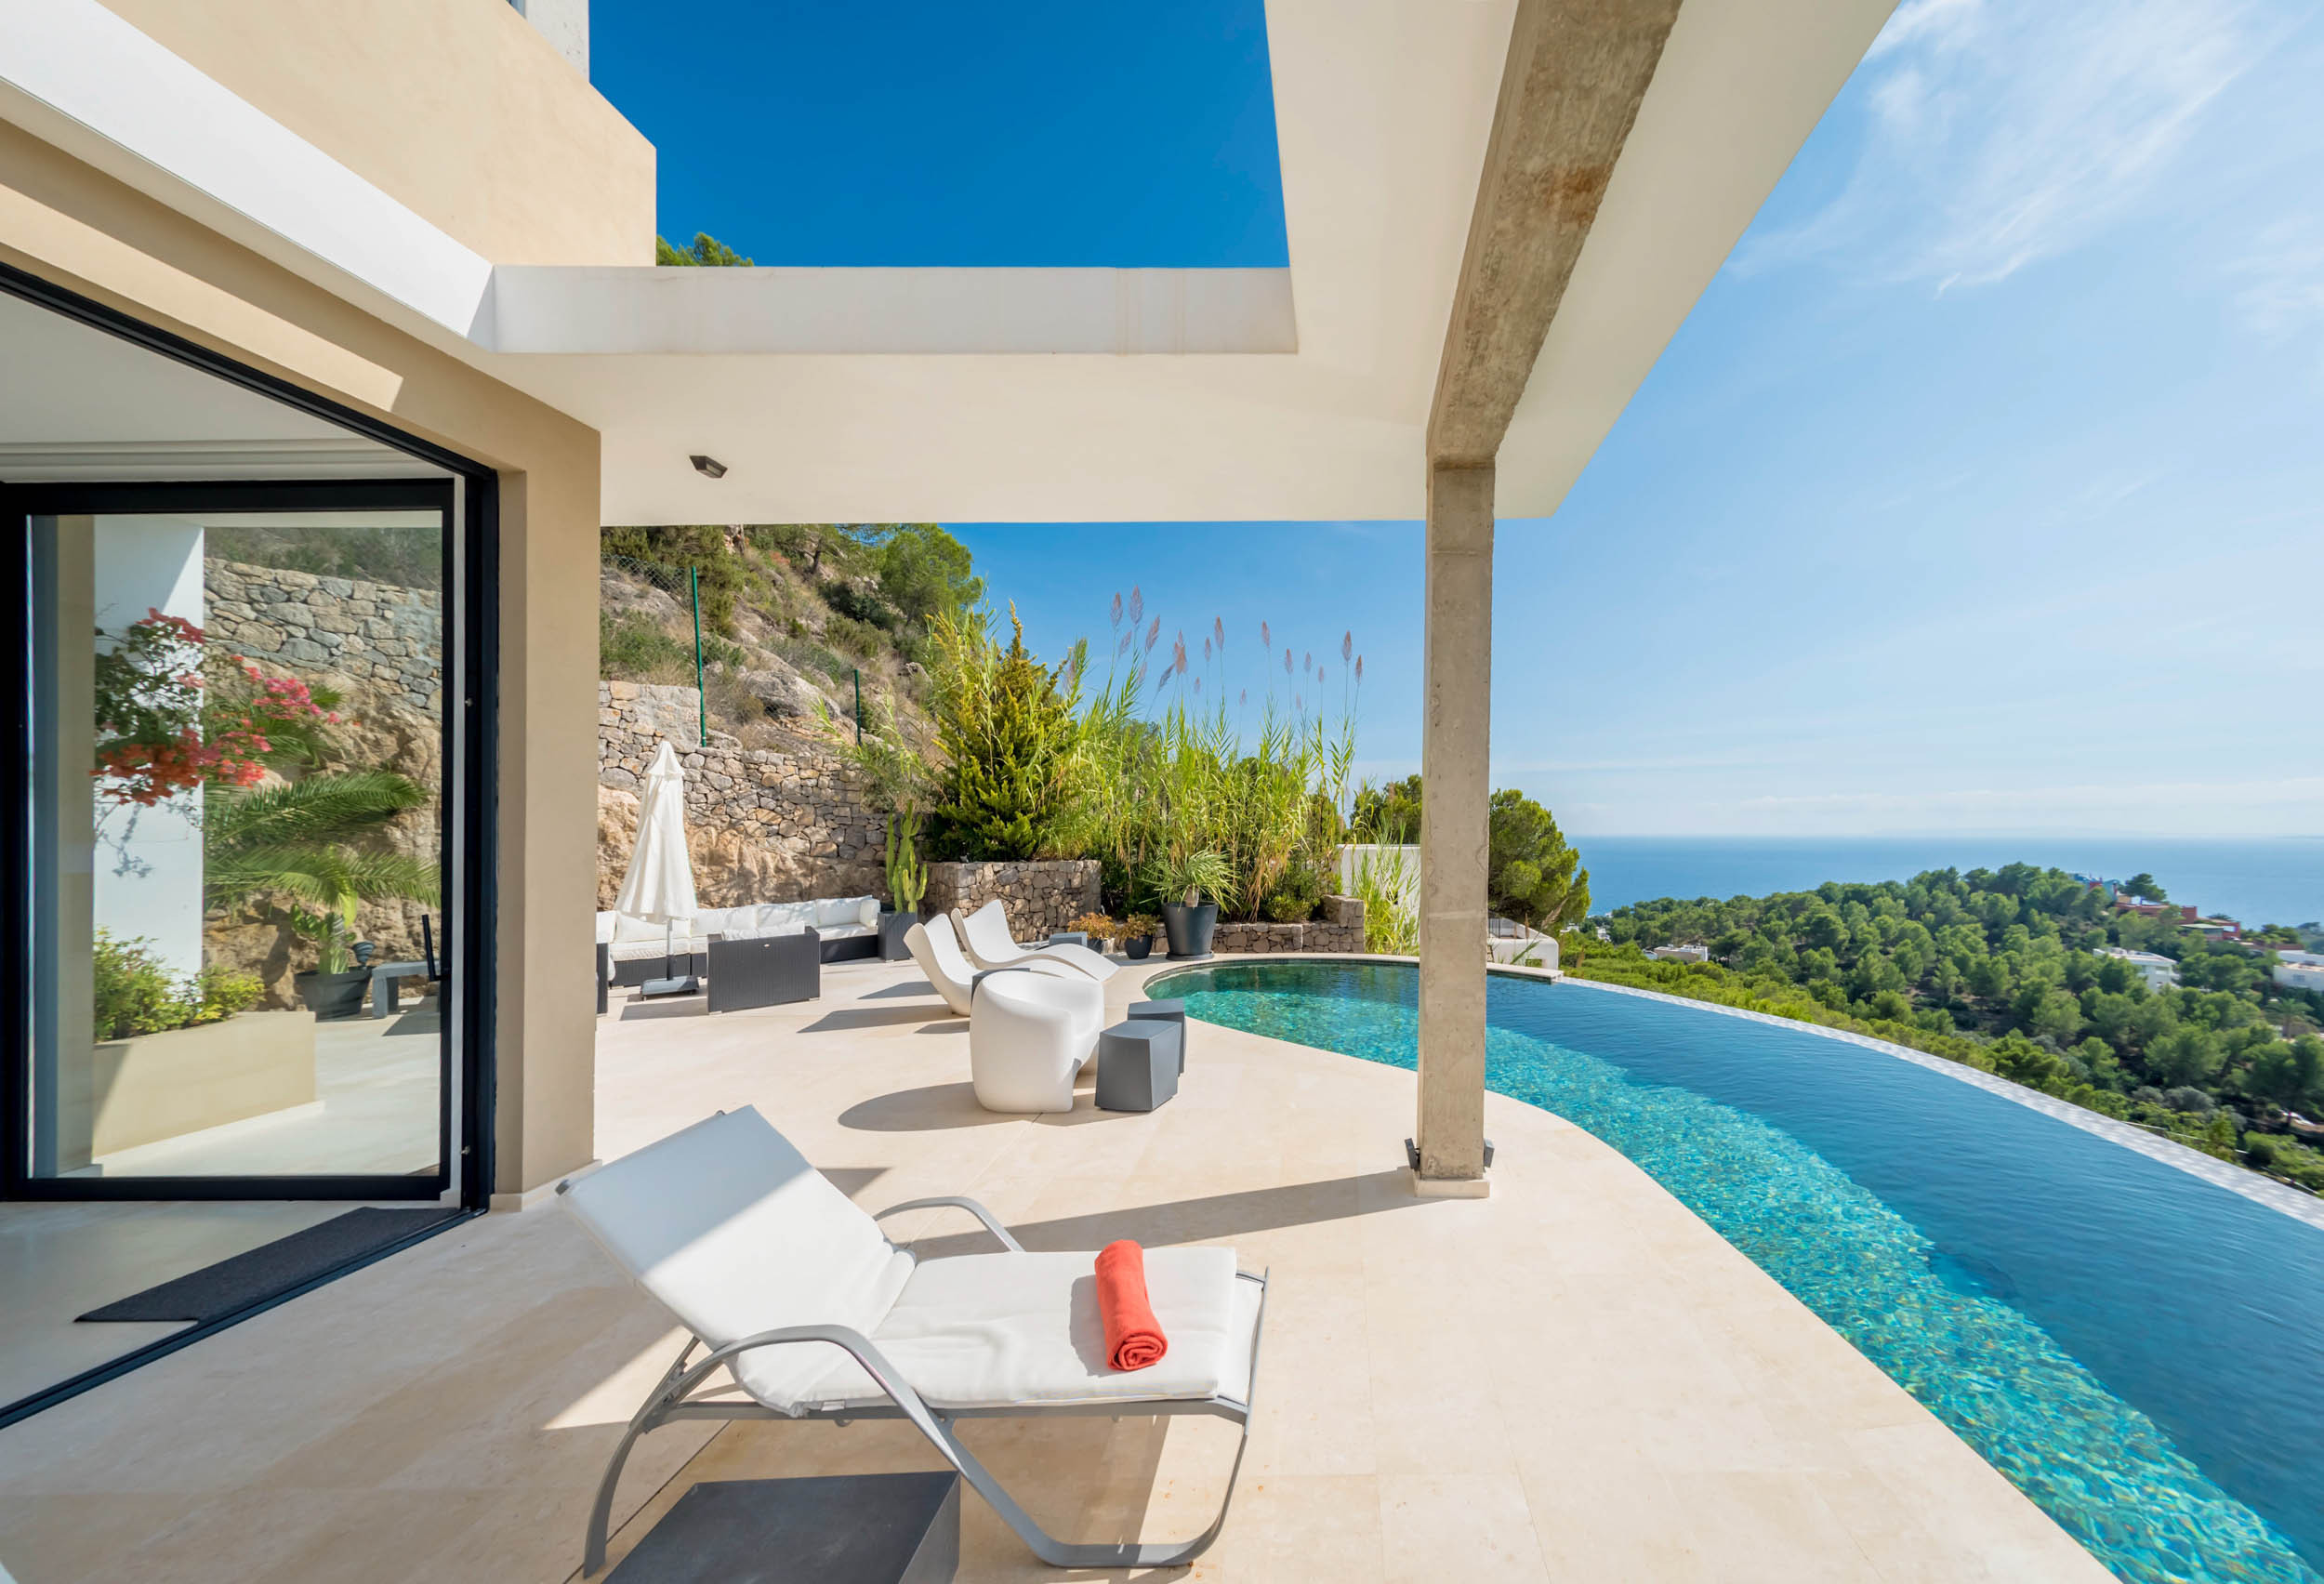 La piscina de la Villa Hilltop ofrece vistas a las playas de Ibiza